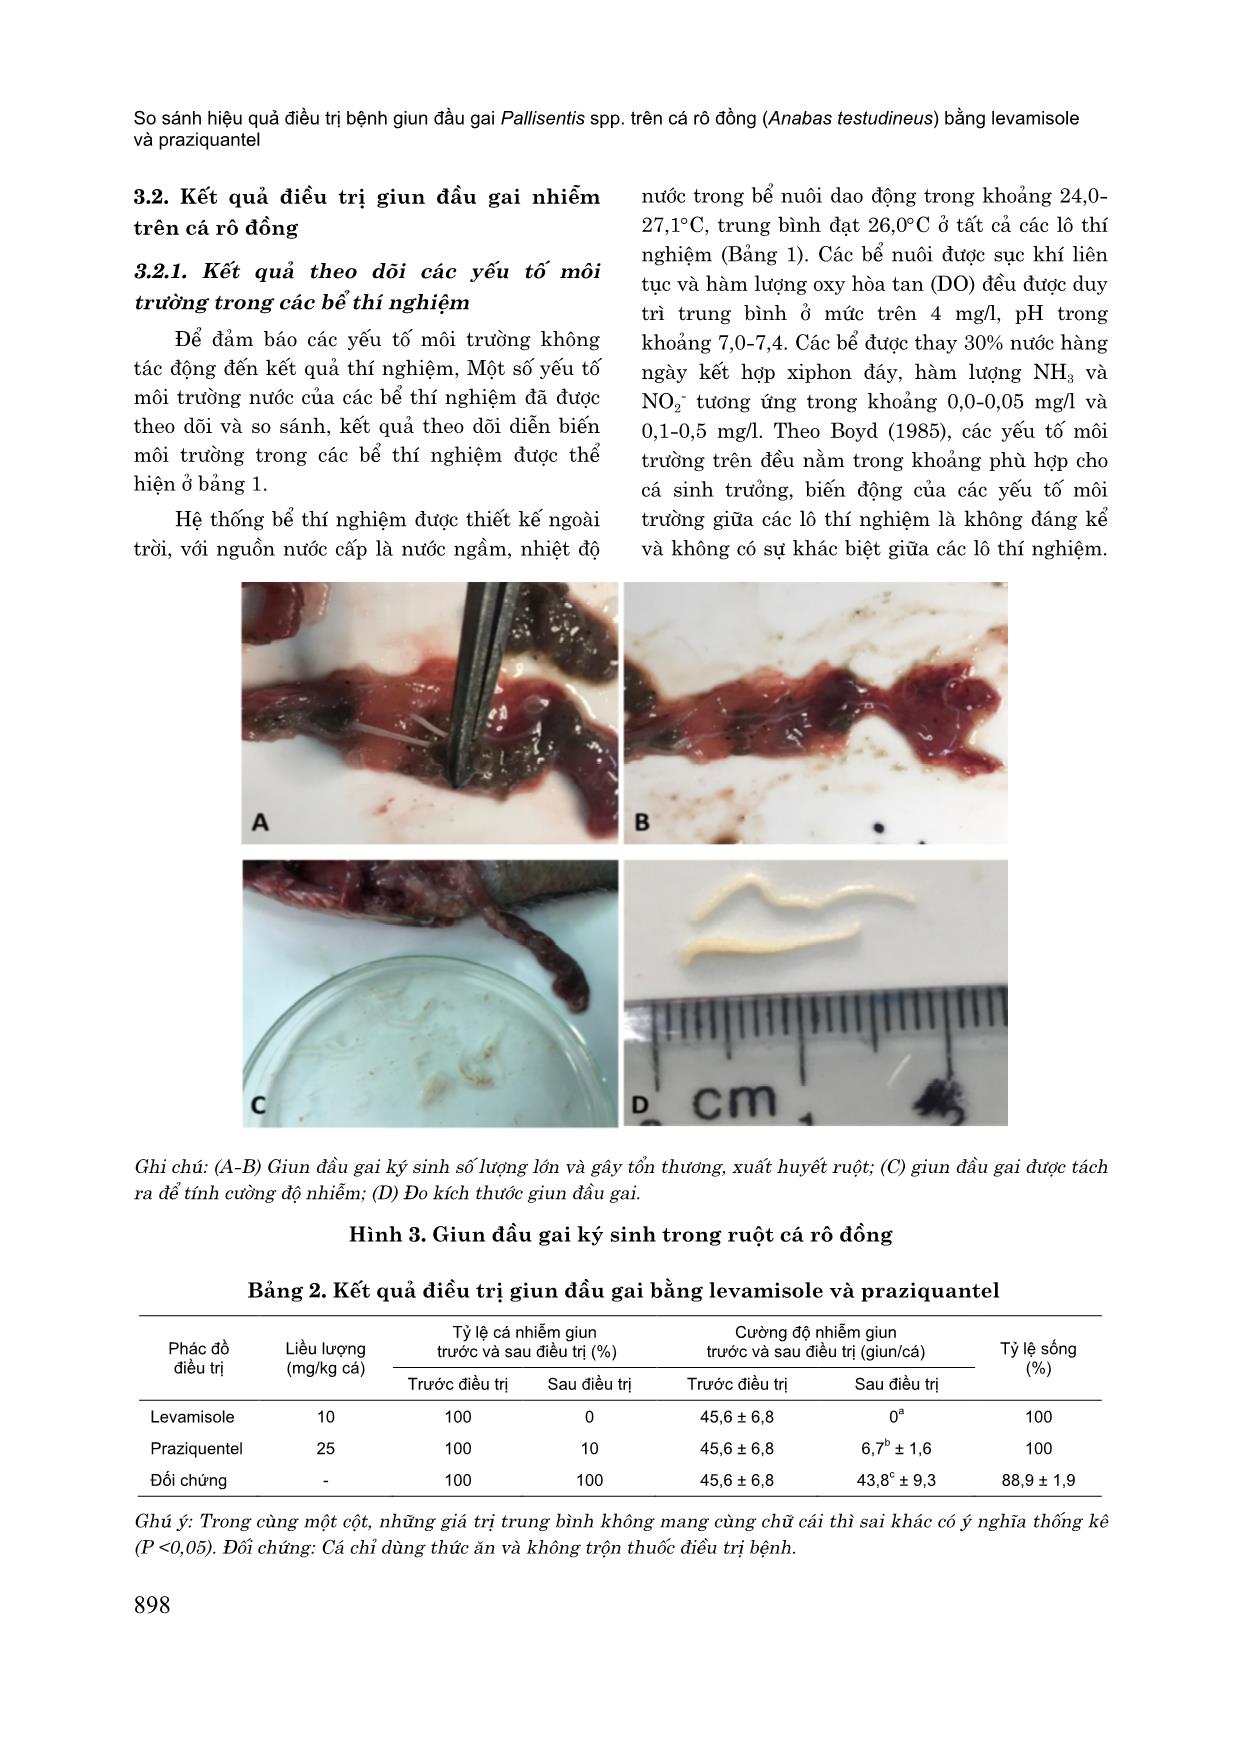 So sánh hiệu quả điều trị bệnh giun đầu gai pallisentis spp. trên cá rô đồng (anabas testudineus) bằng levamisole và praziquantel trang 5